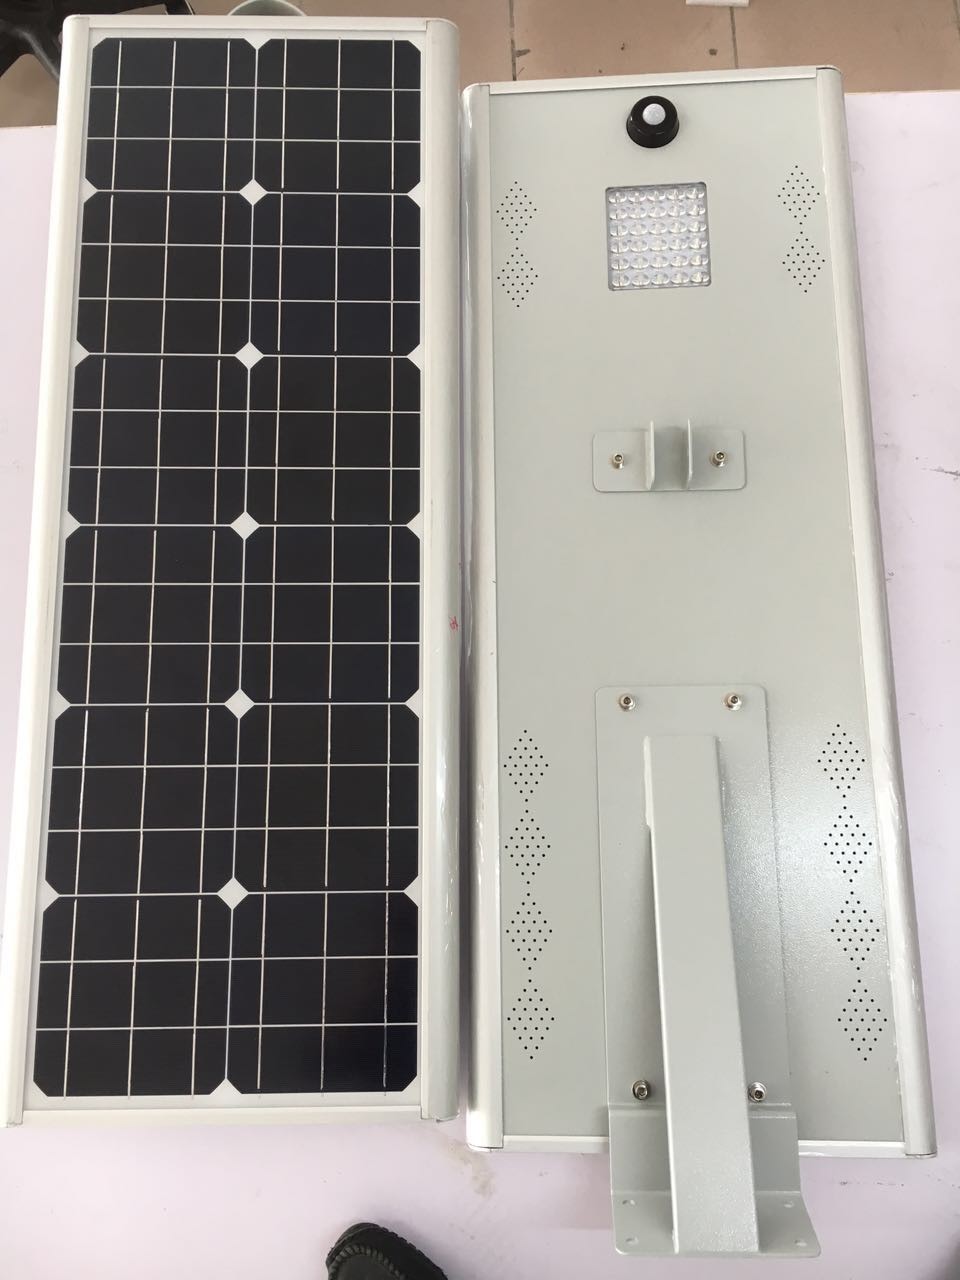 太阳能路灯厂家 太阳能路灯控制器 太阳能路灯电池 太阳能路灯组件